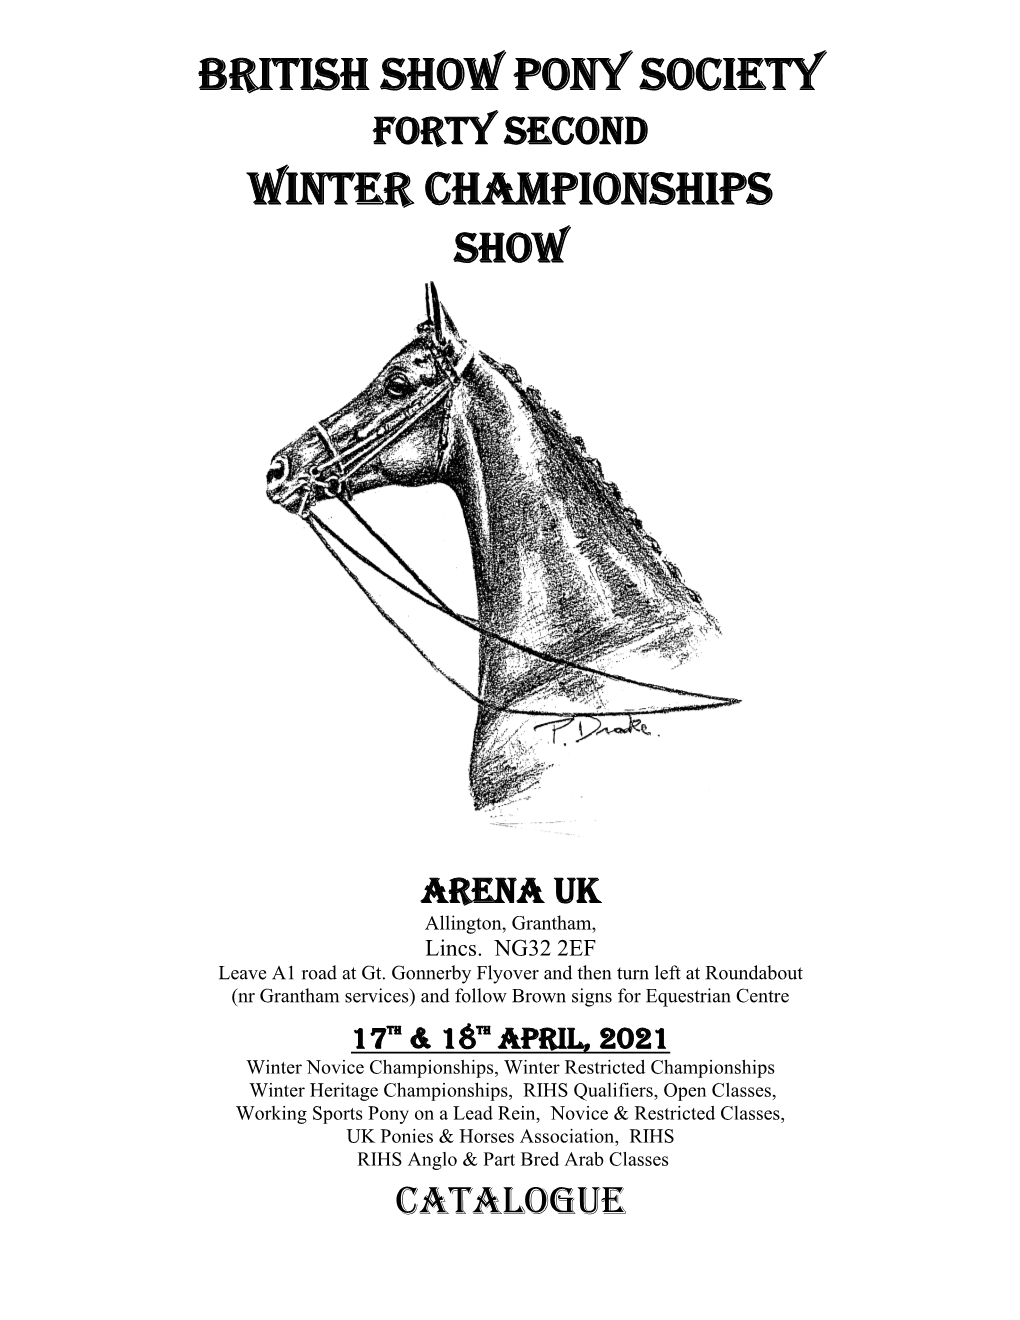 British Show Pony Society Winter Championships